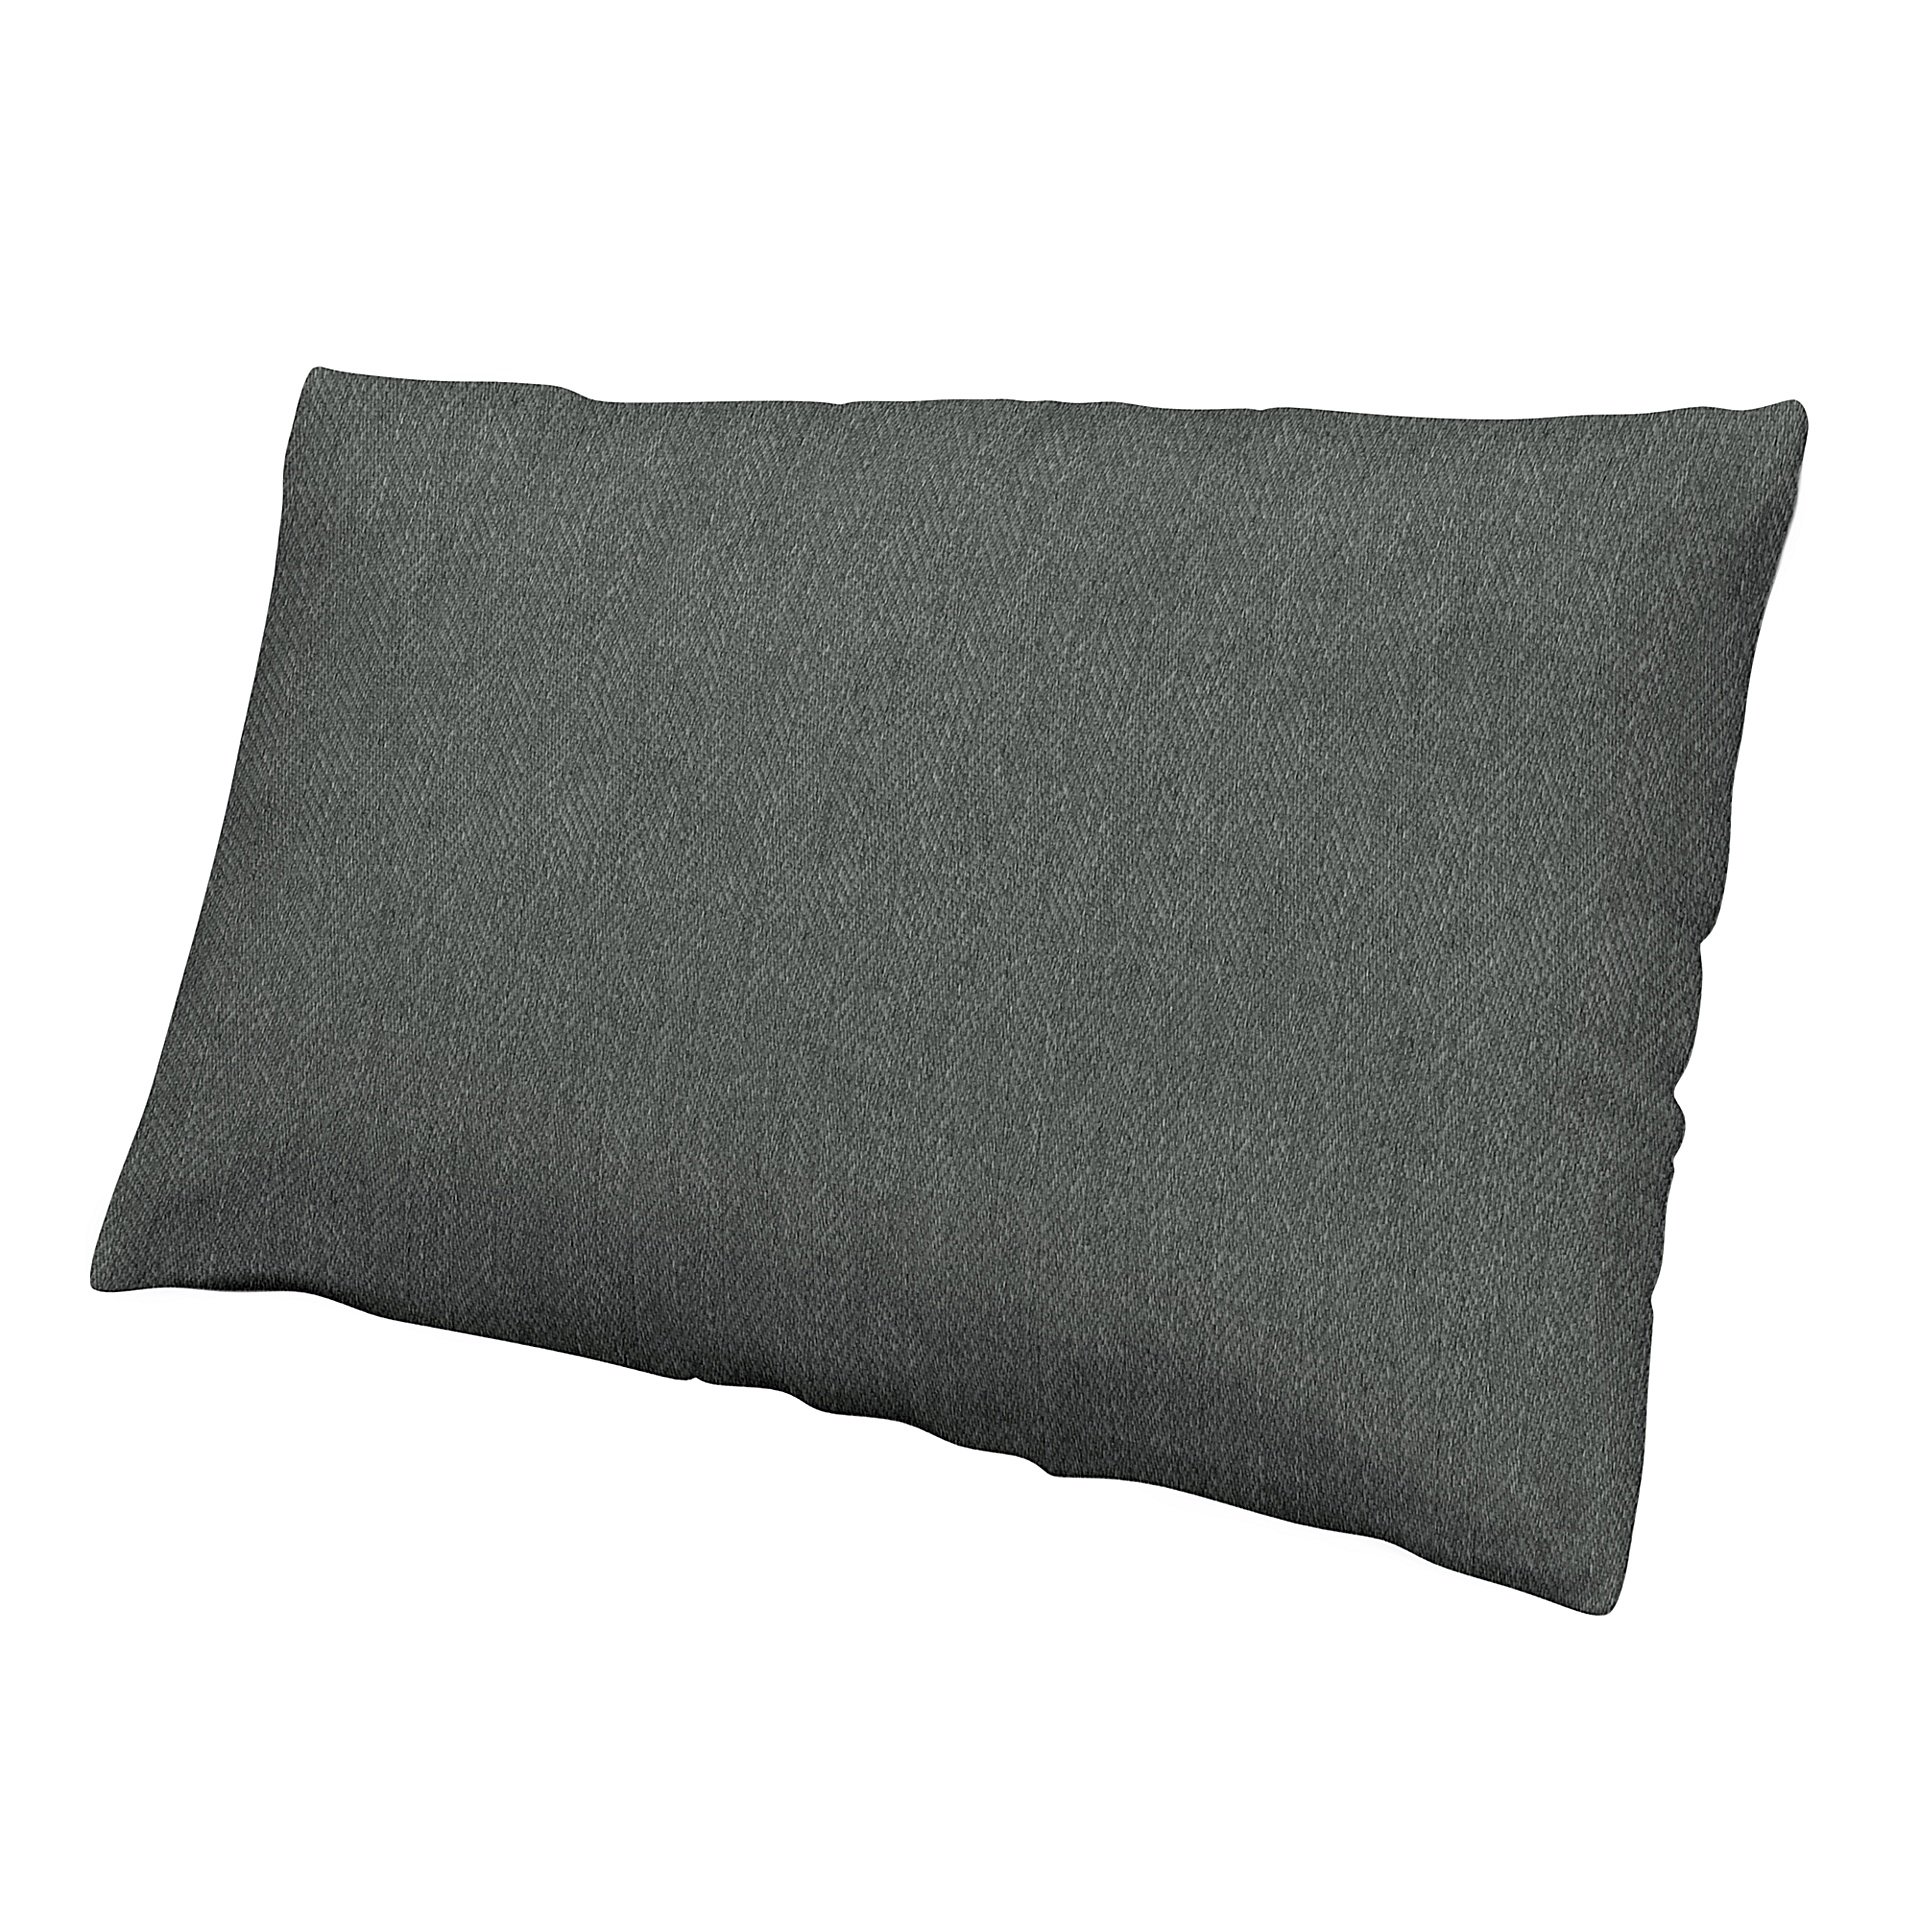 Cushion cover, Laurel, Boucle & Texture - Bemz